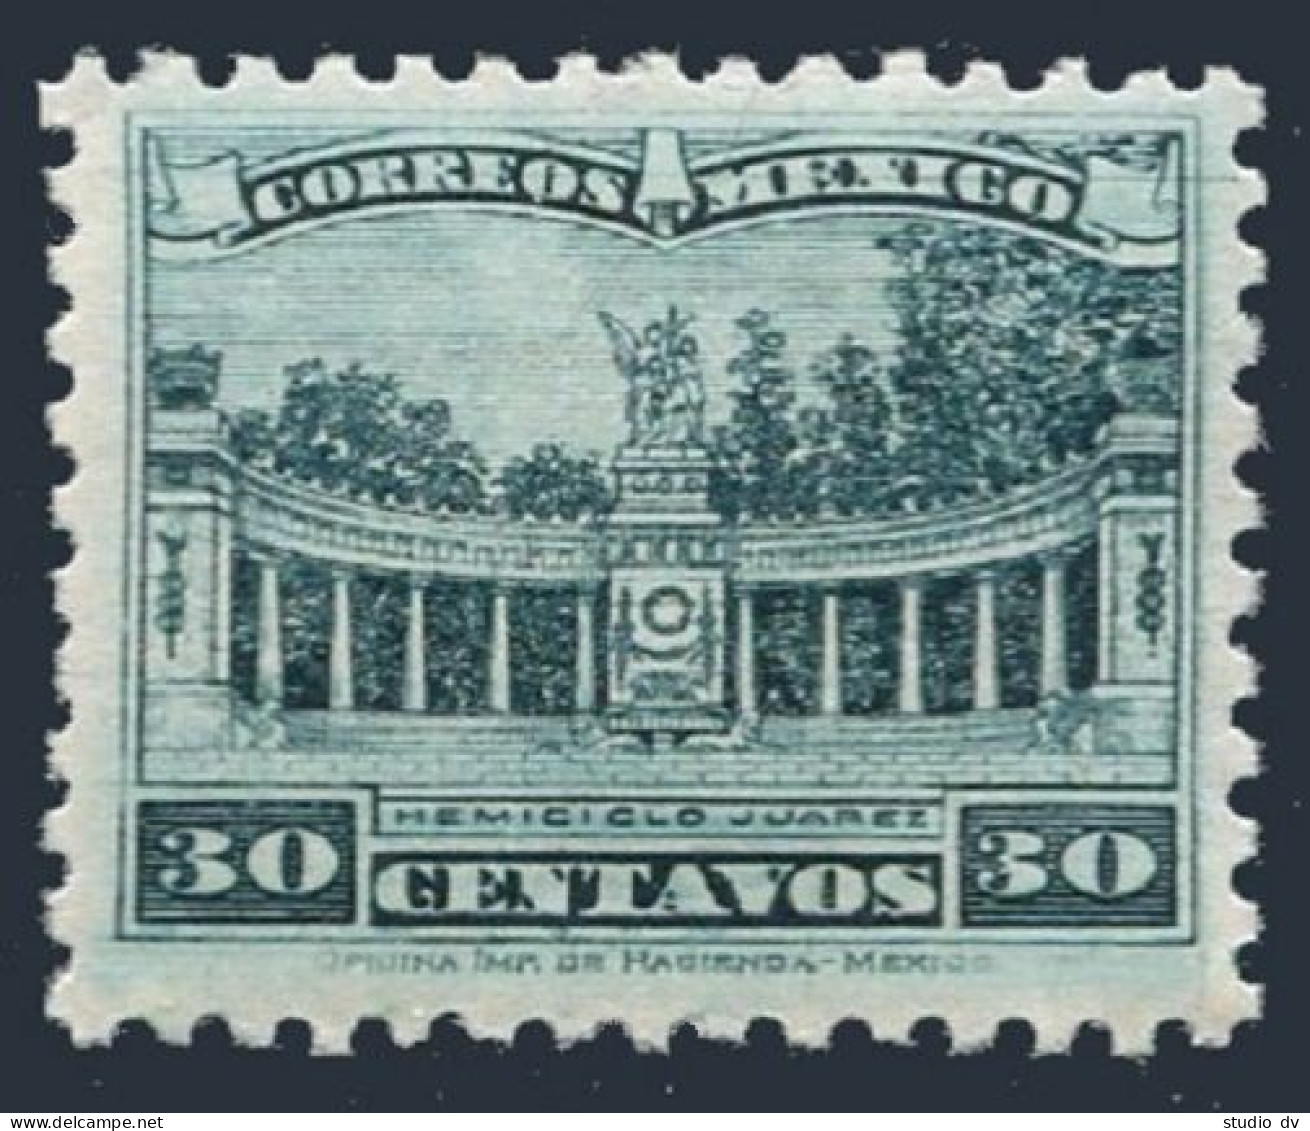 Mexico 692 Wmk 156,perf 10.5,MNH.Michel 676. Juarez Colonnade,Mexico,1934. - Mexique